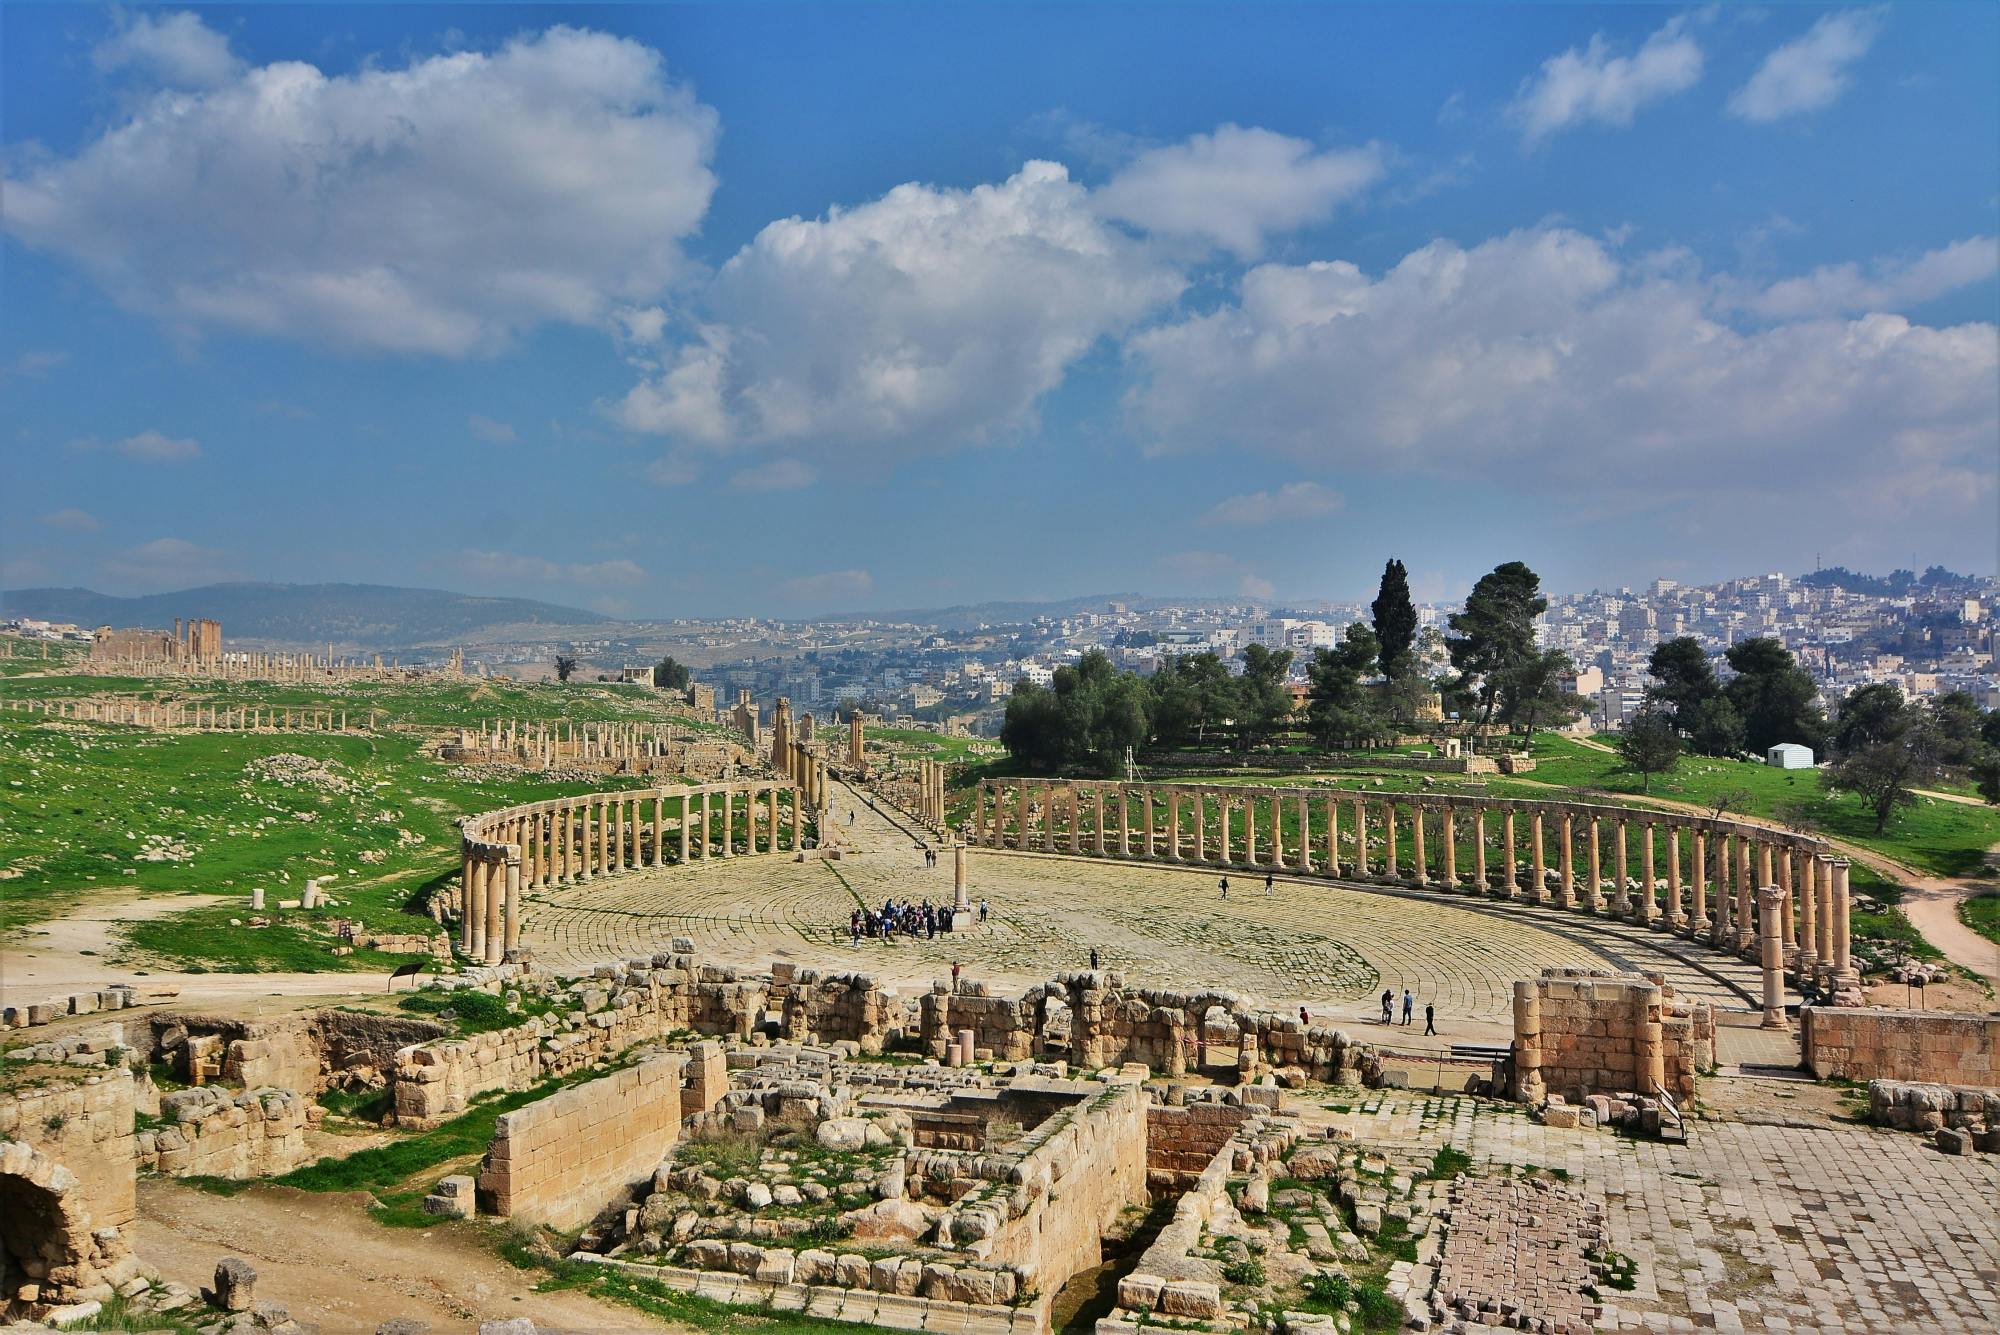 Stadstour door Amman met bezoek aan de oude stad Jerash